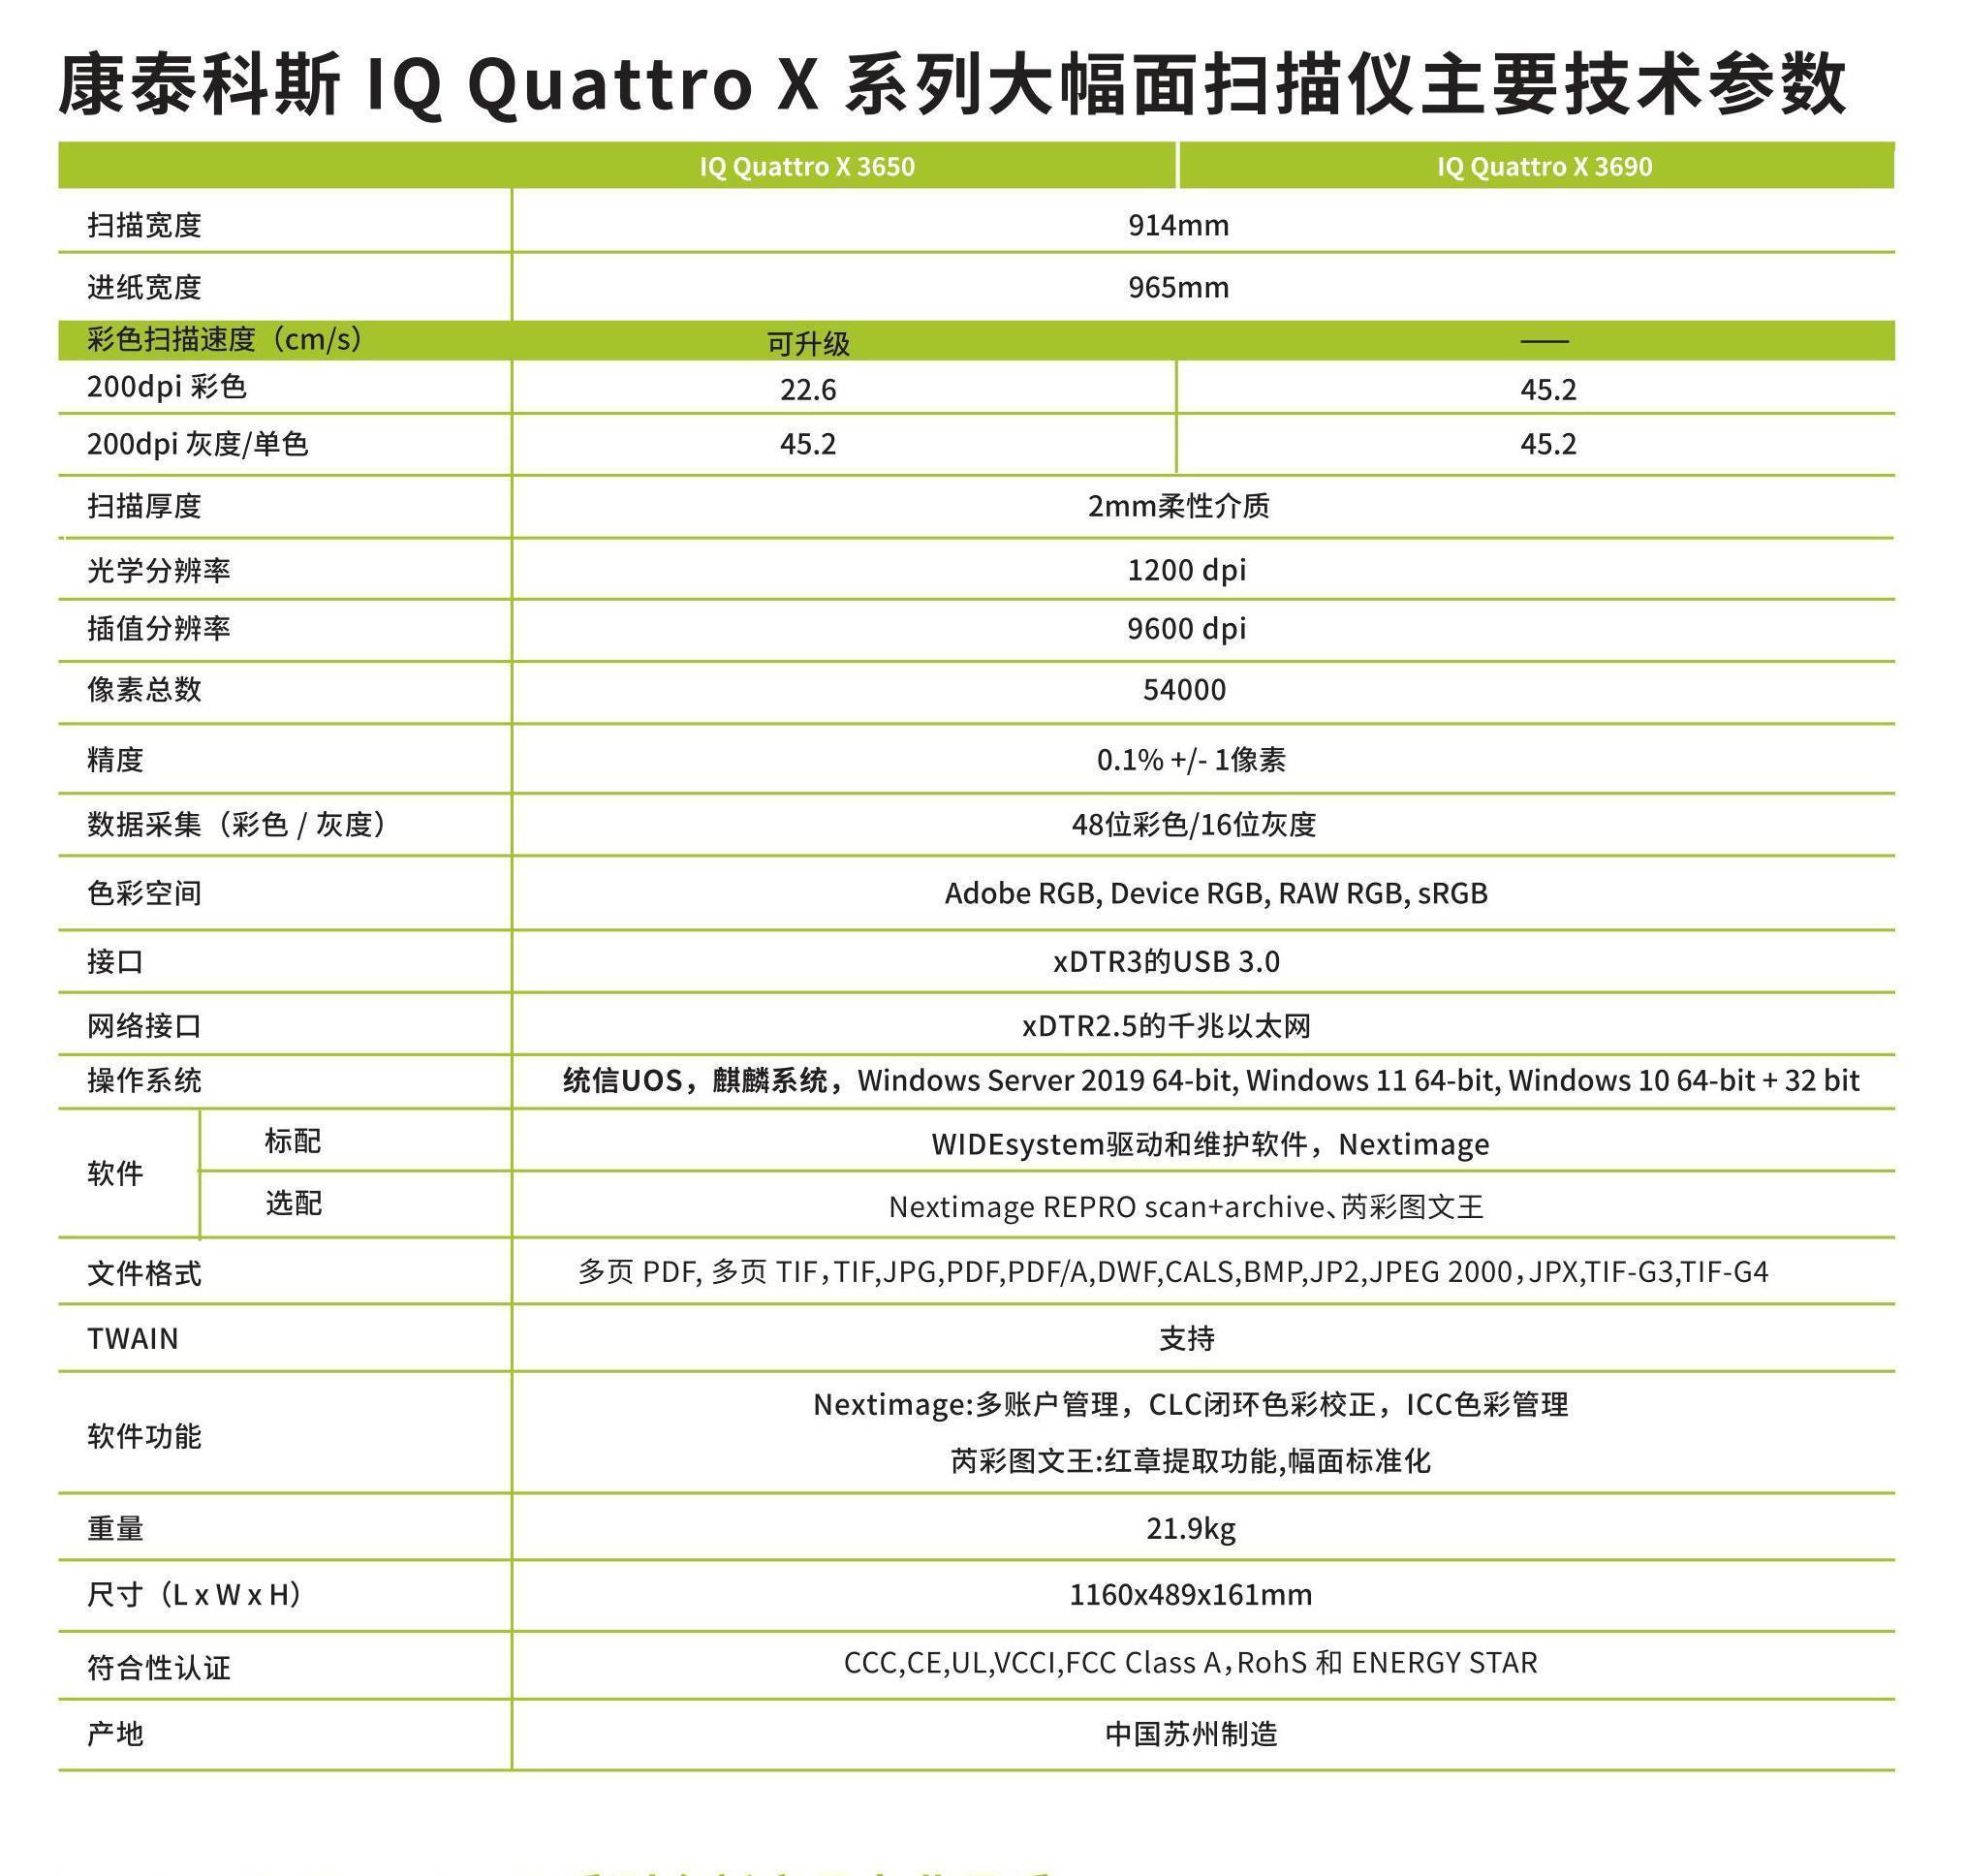 Contex IQ Quattro X3650